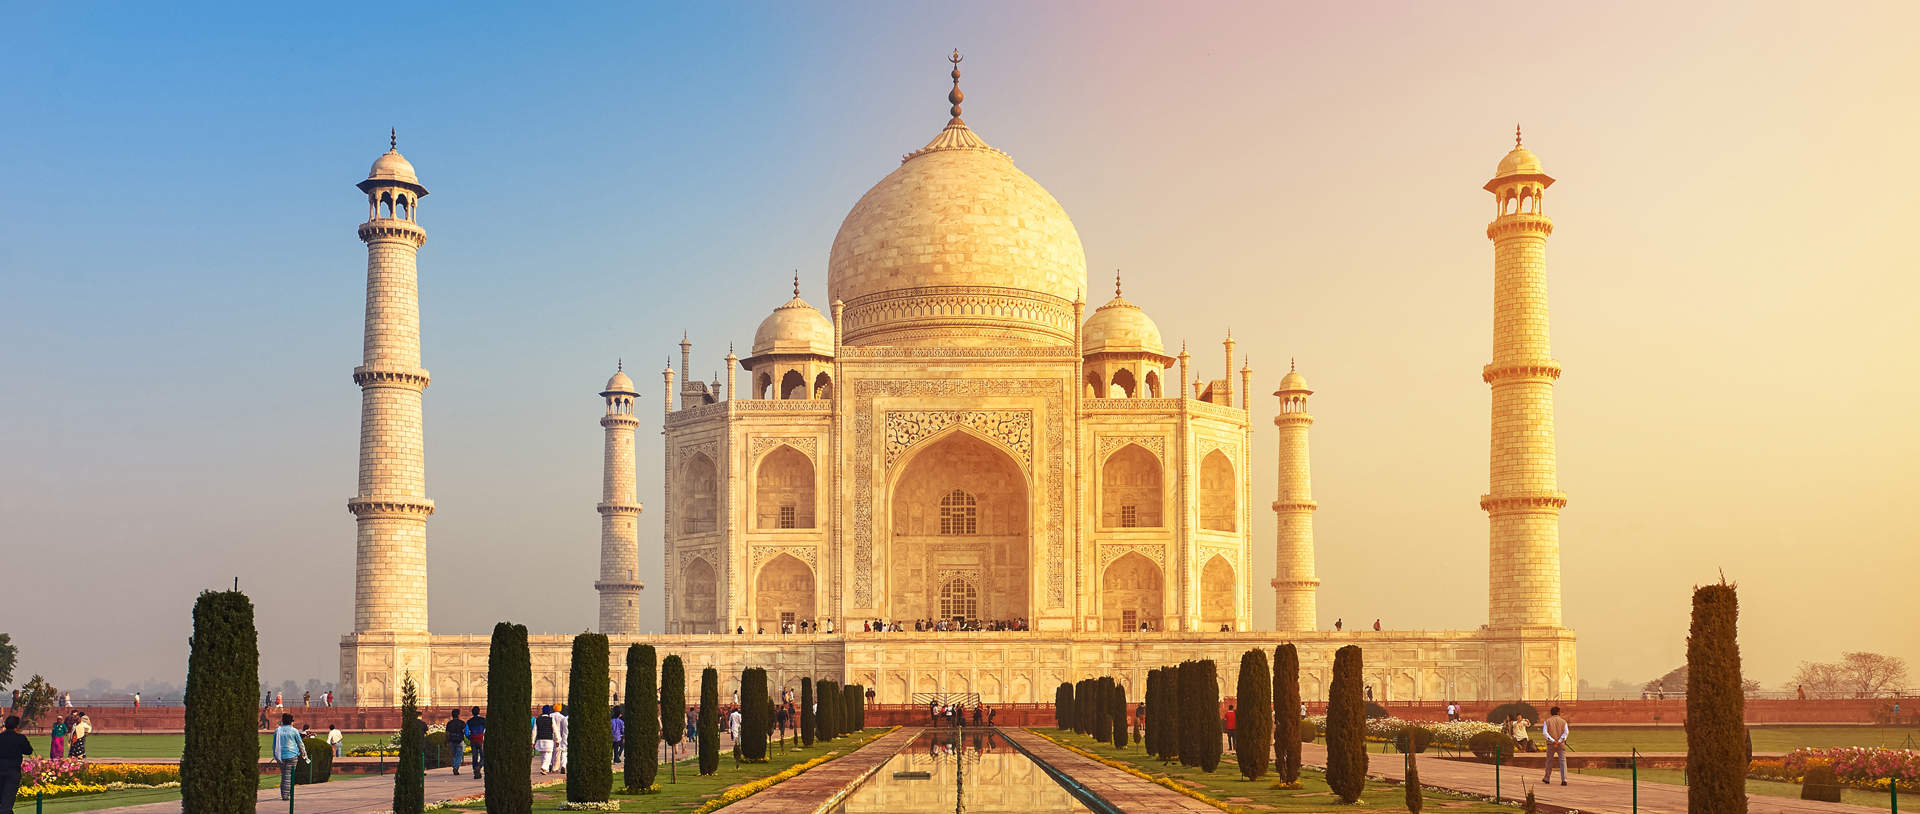 Taj Mahal At Dusk